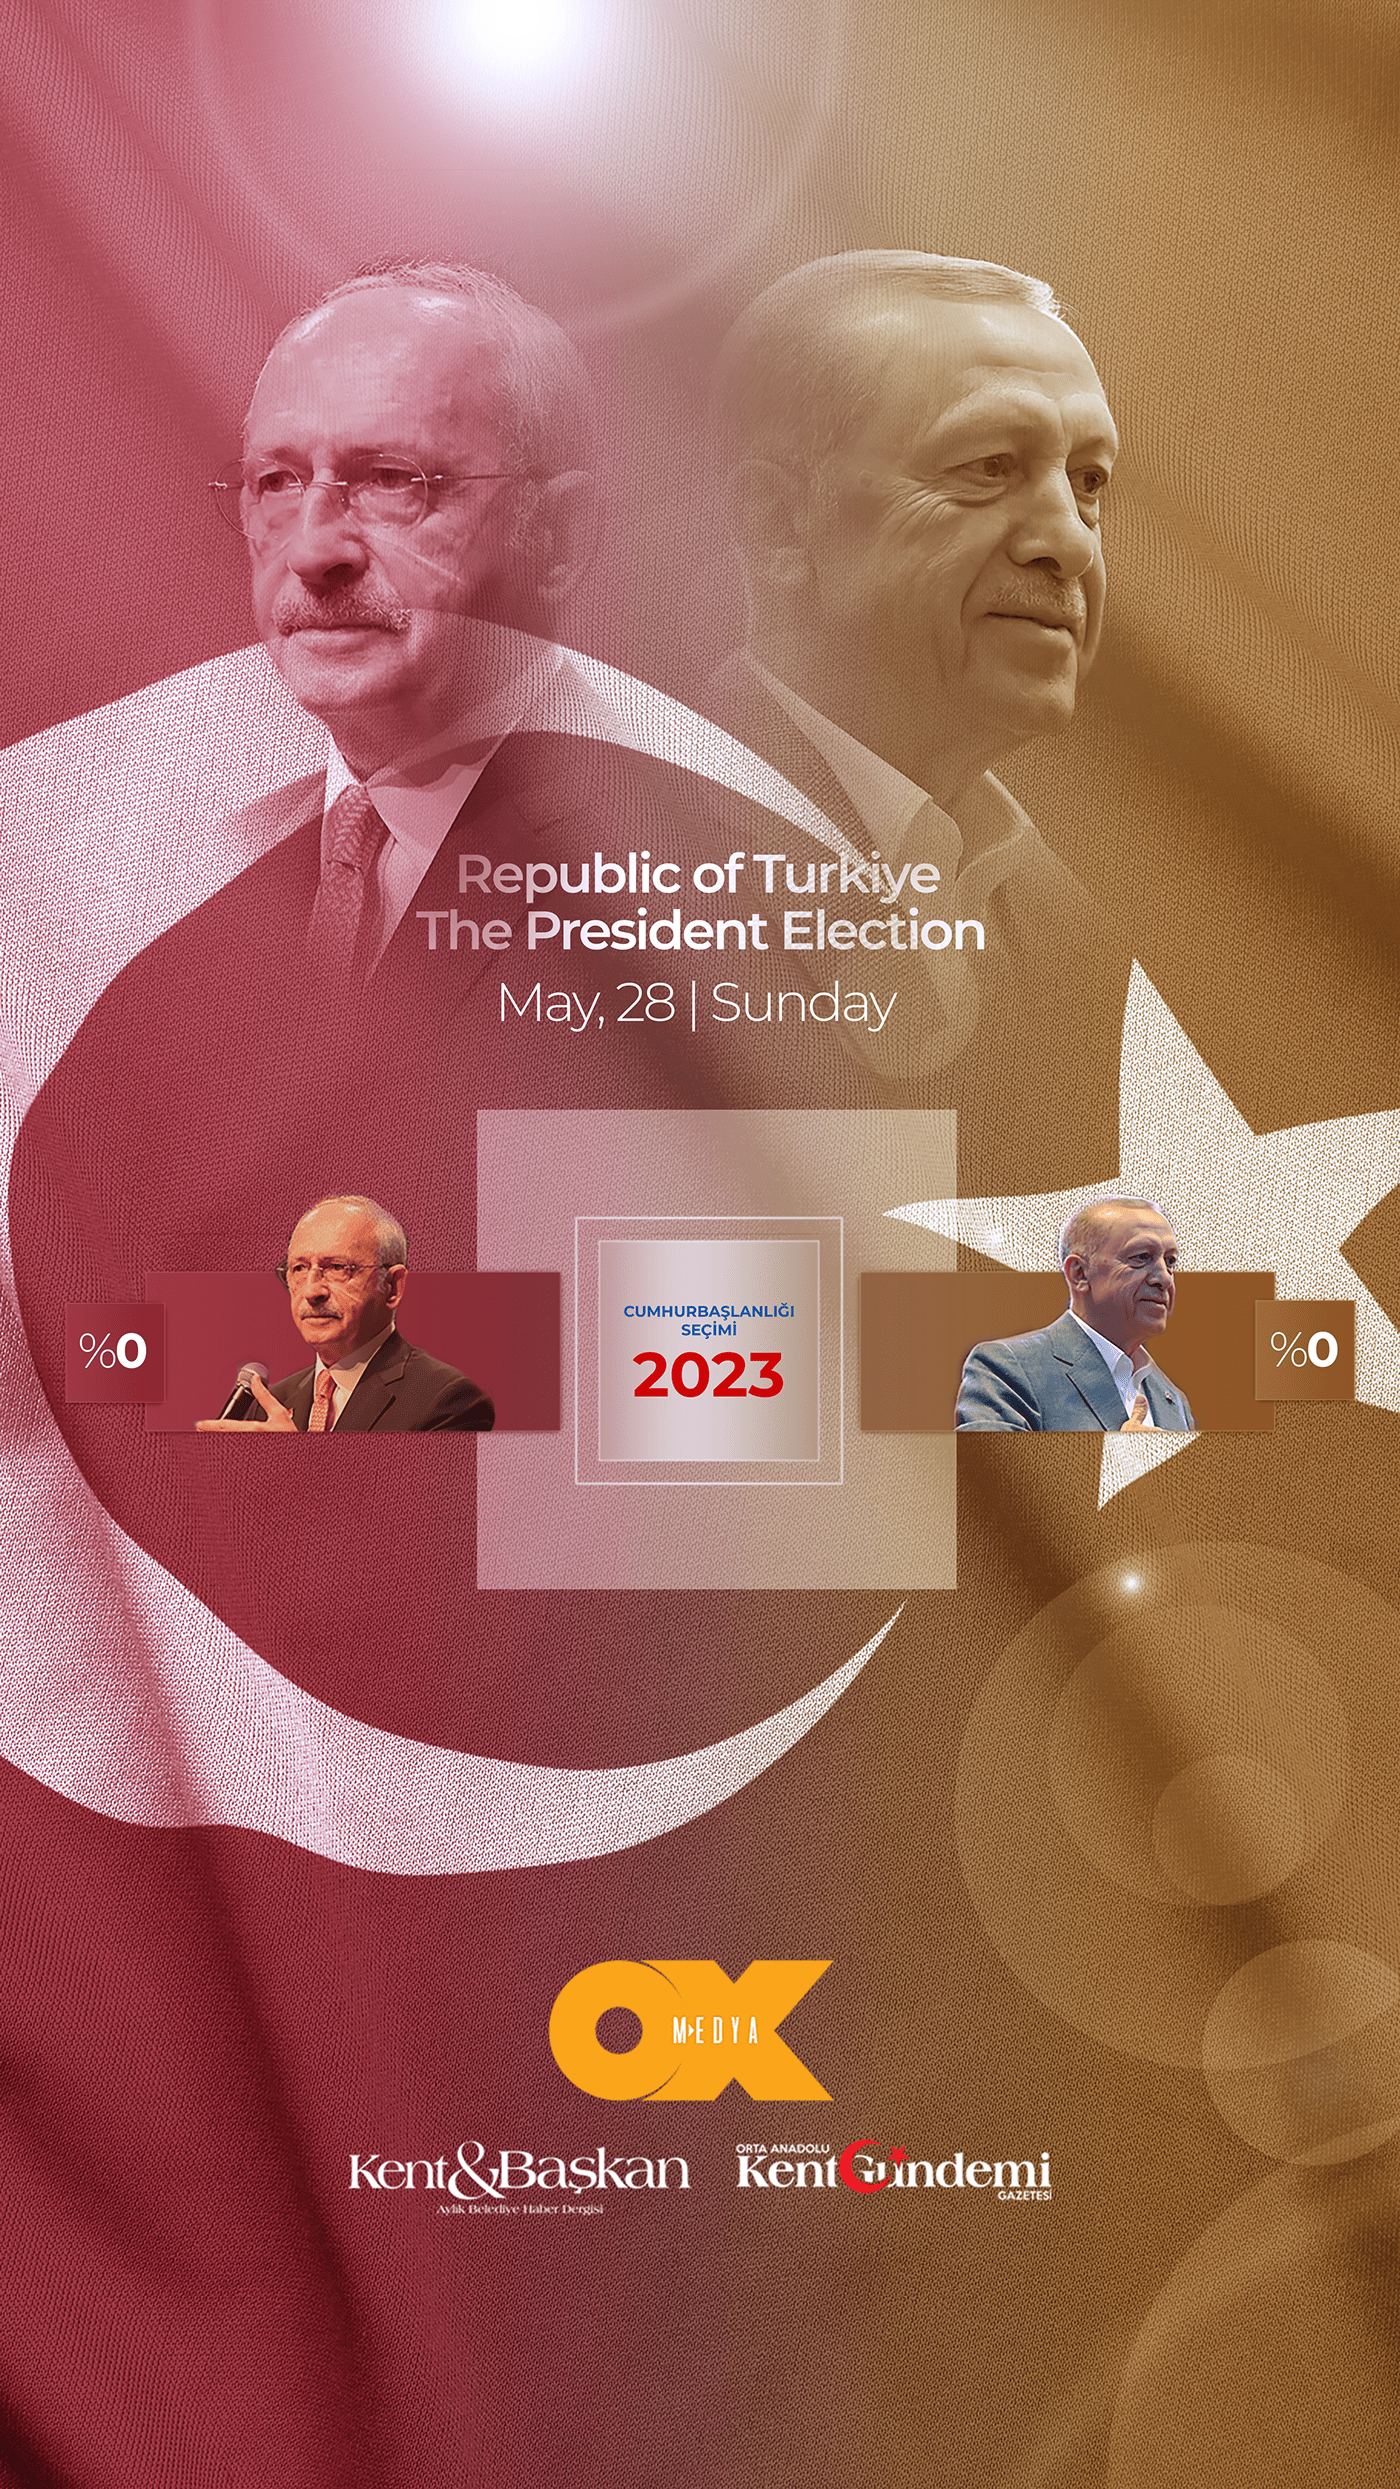 Cumhurbaskanı Election erdogan KILIÇDAROĞLU kılıçdaroğlu politics Turkey turkish vote